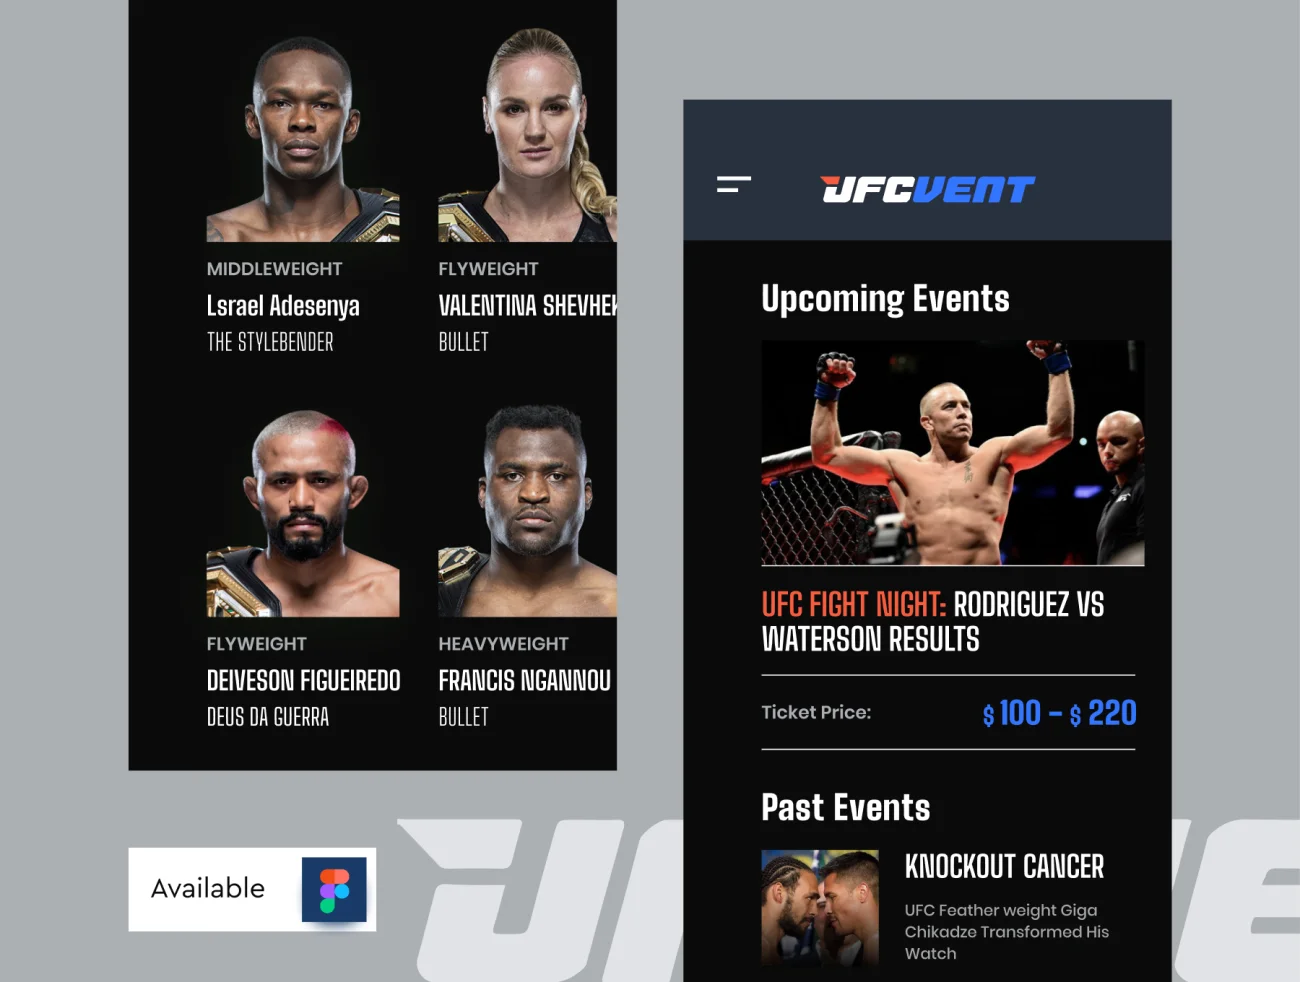 20屏完整版UFC MMA拳击摔跤综合格斗赛事比赛应用 UFC VENT – MMA Event Booking app插图7